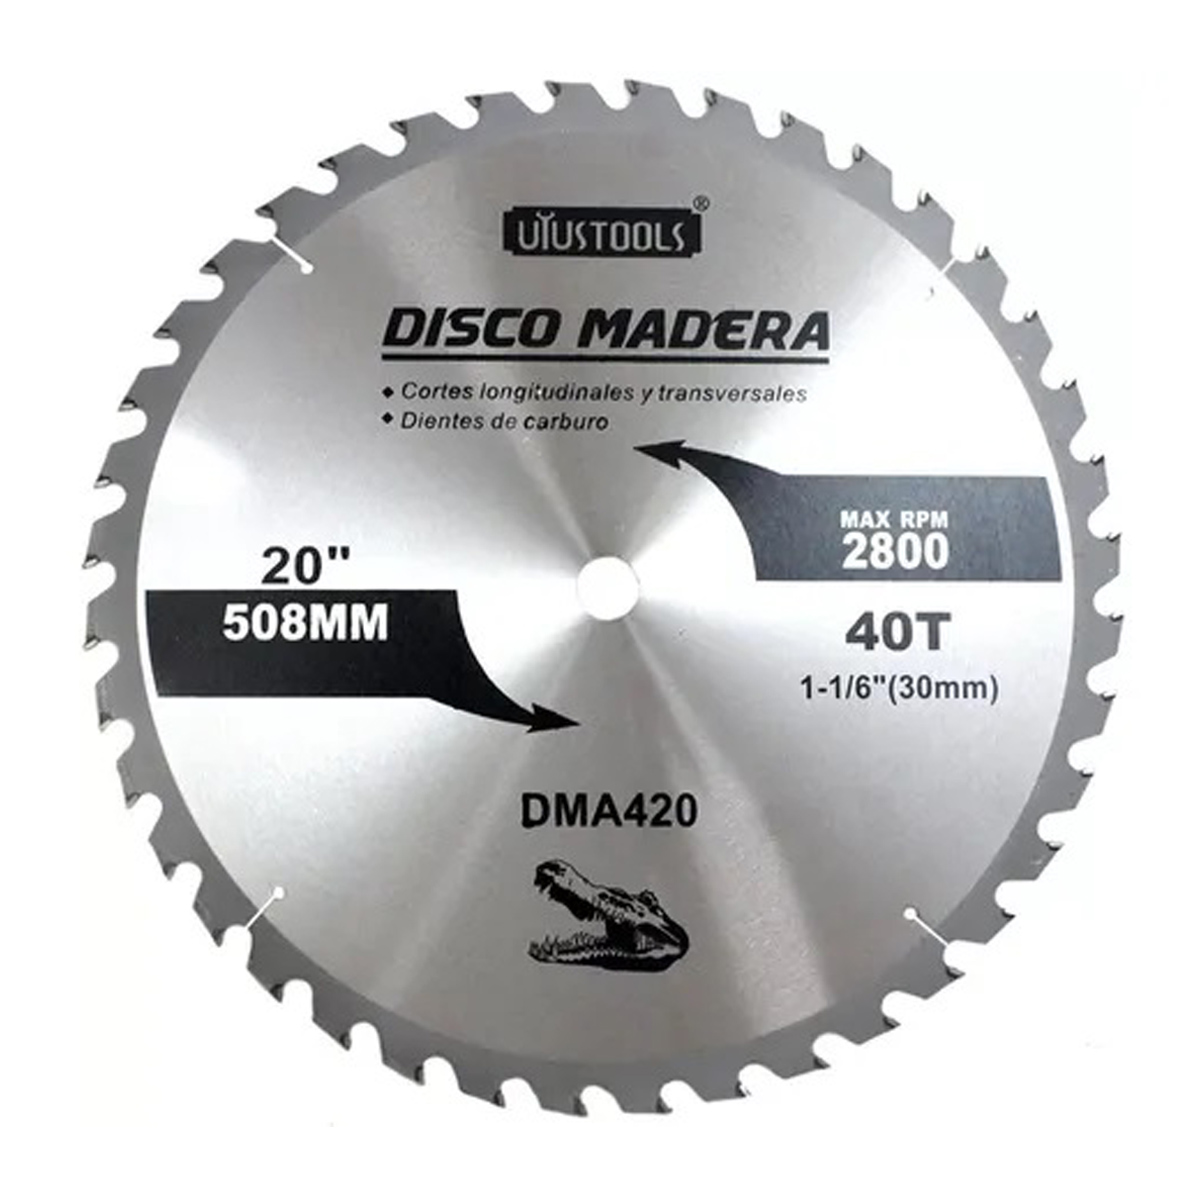 Disco sierra 20"40T